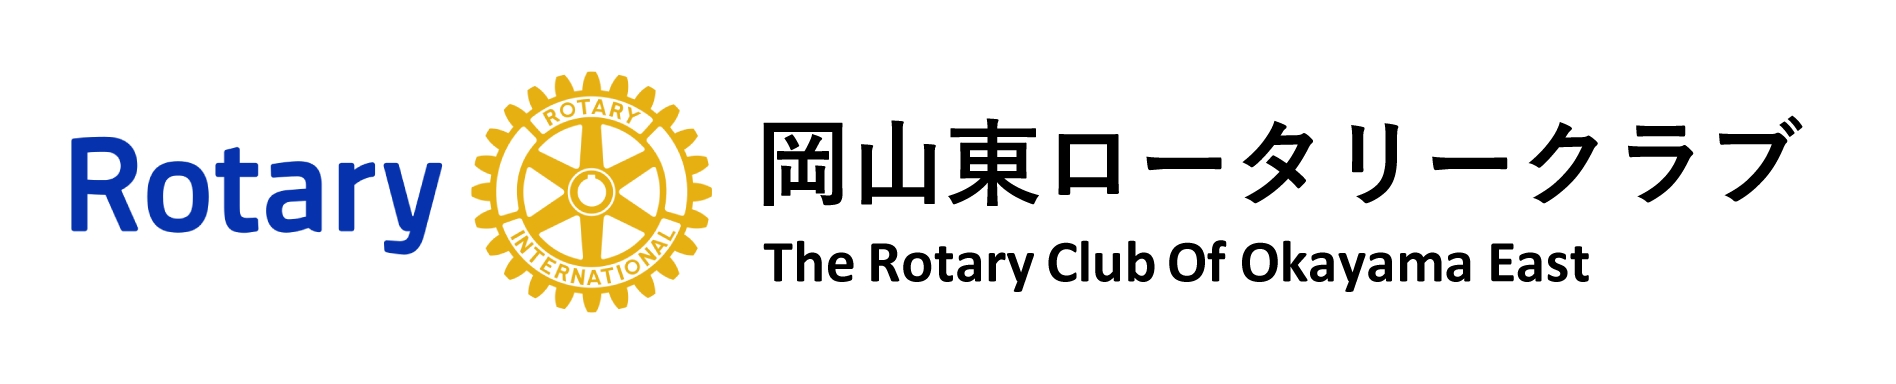 岡山東ロータリークラブ